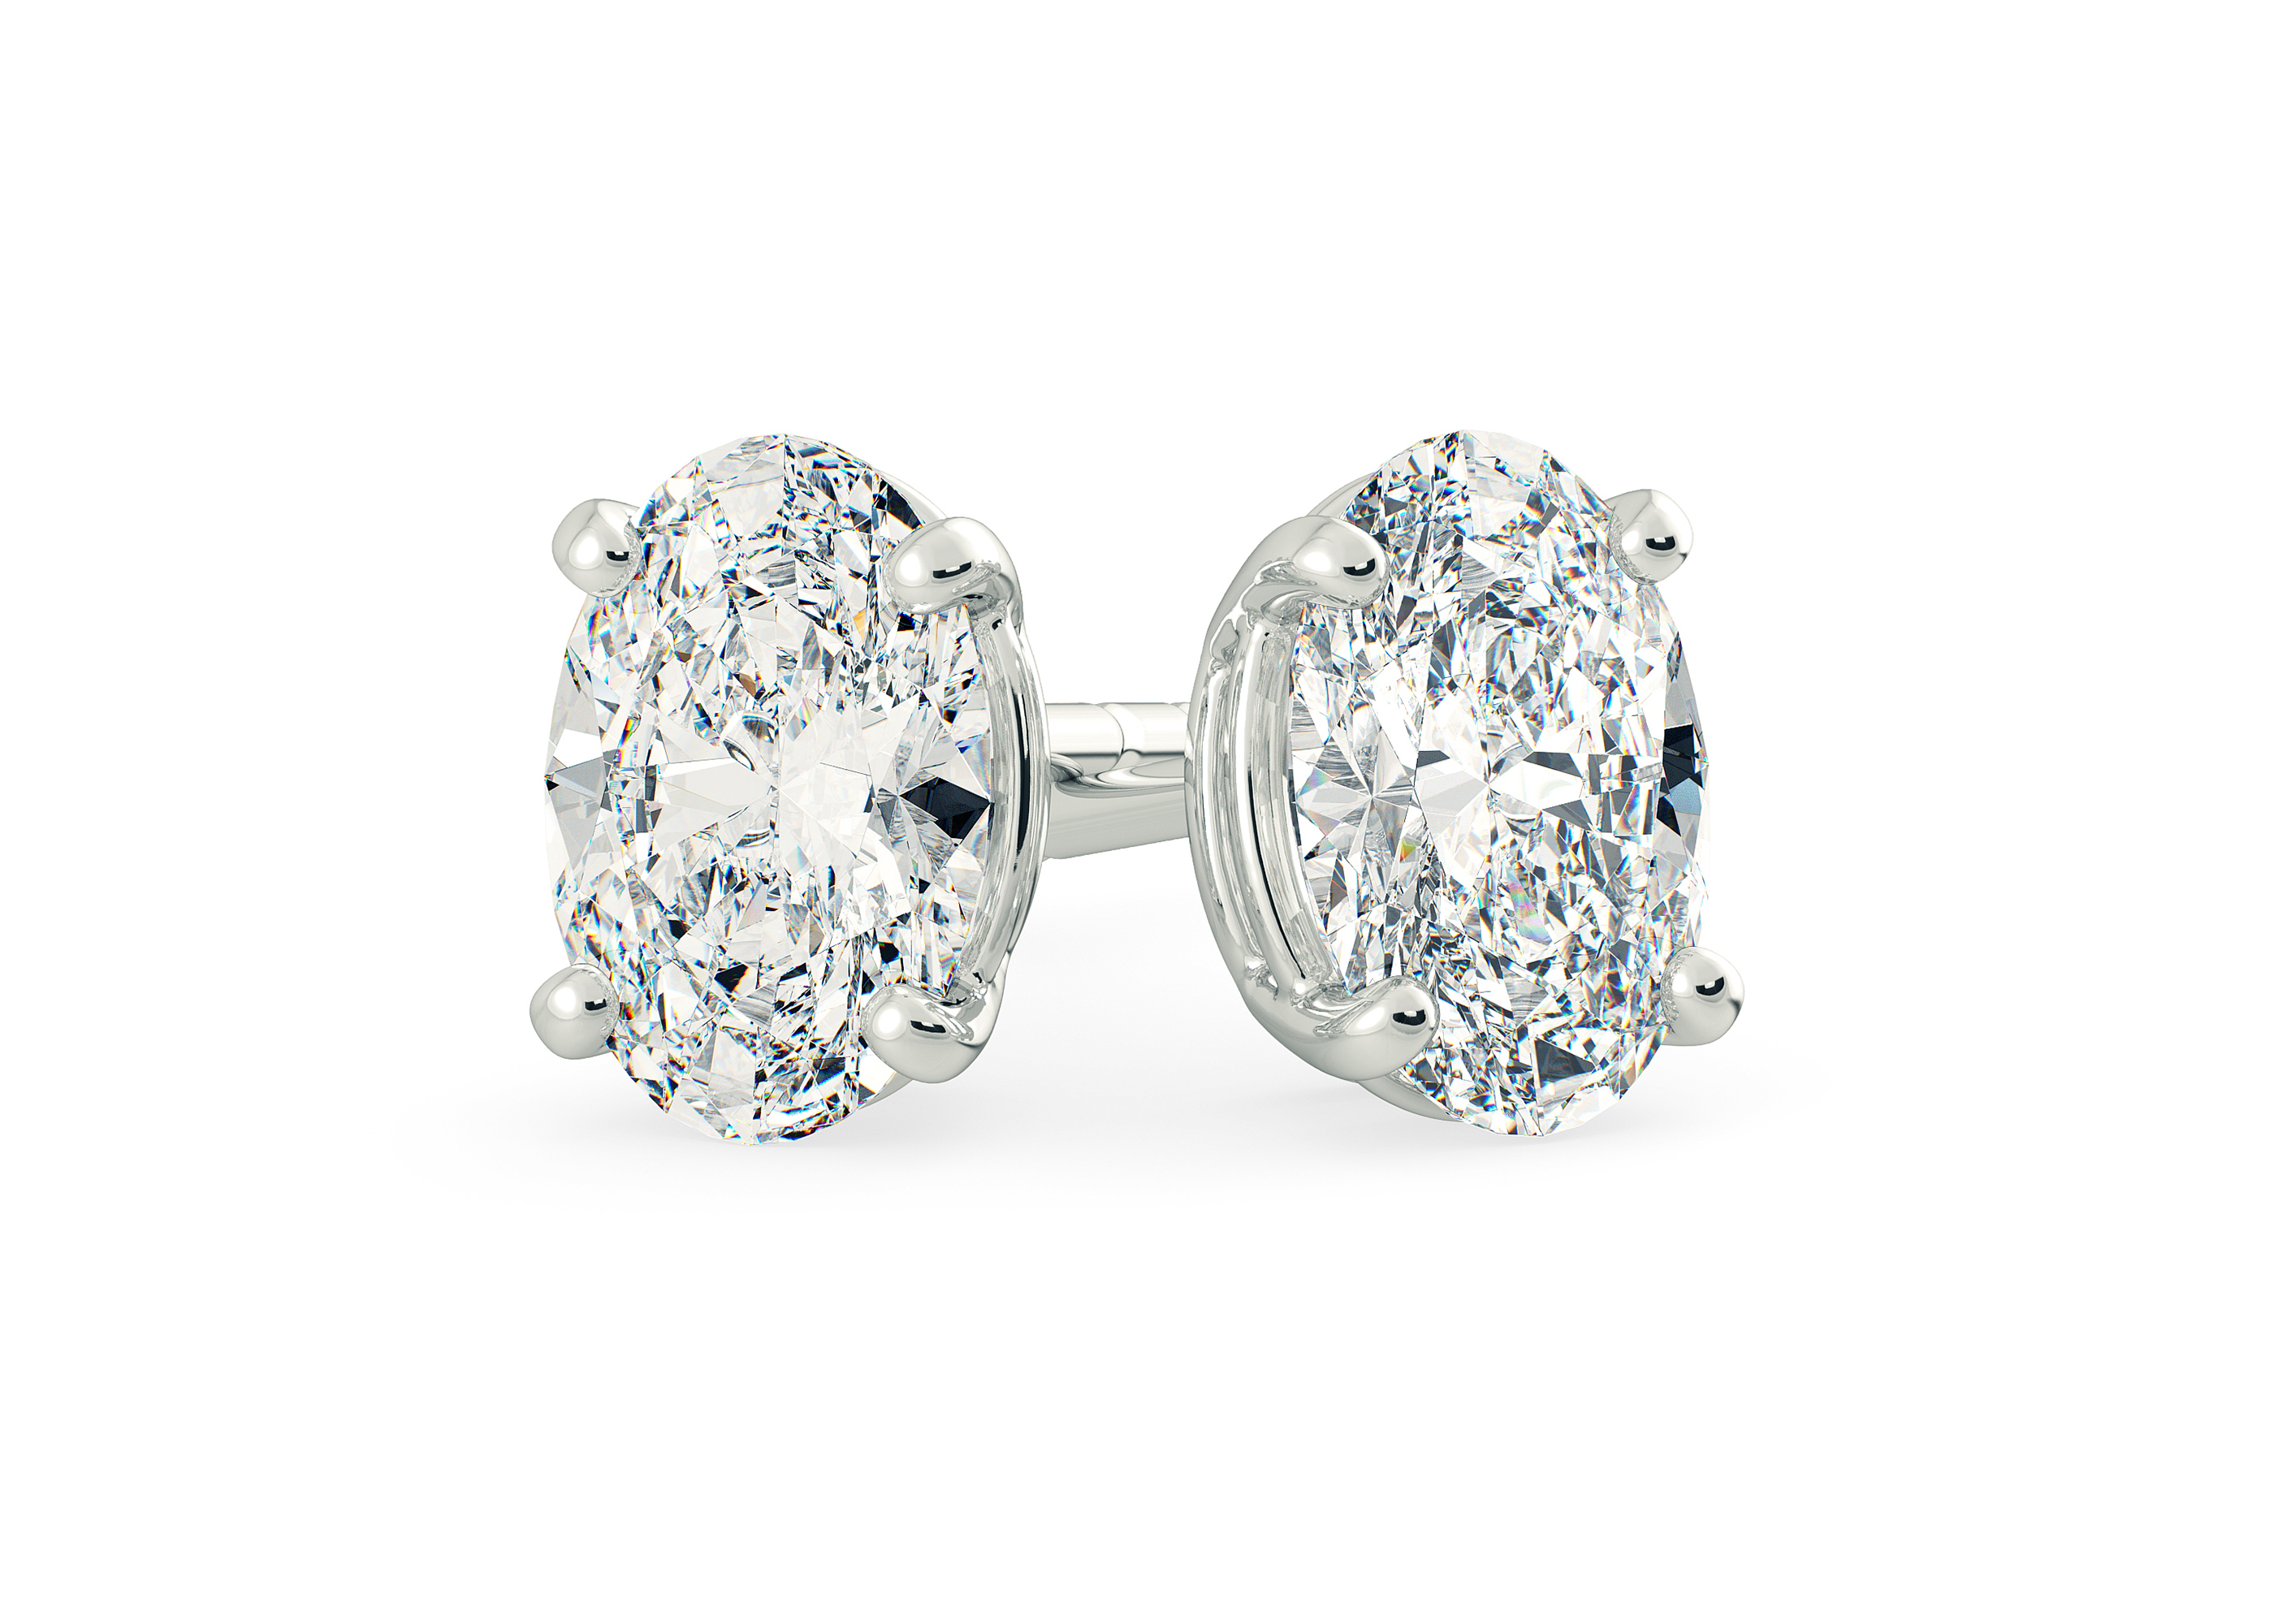 Half Carat Oval Diamond Stud Earrings in 9K White Gold